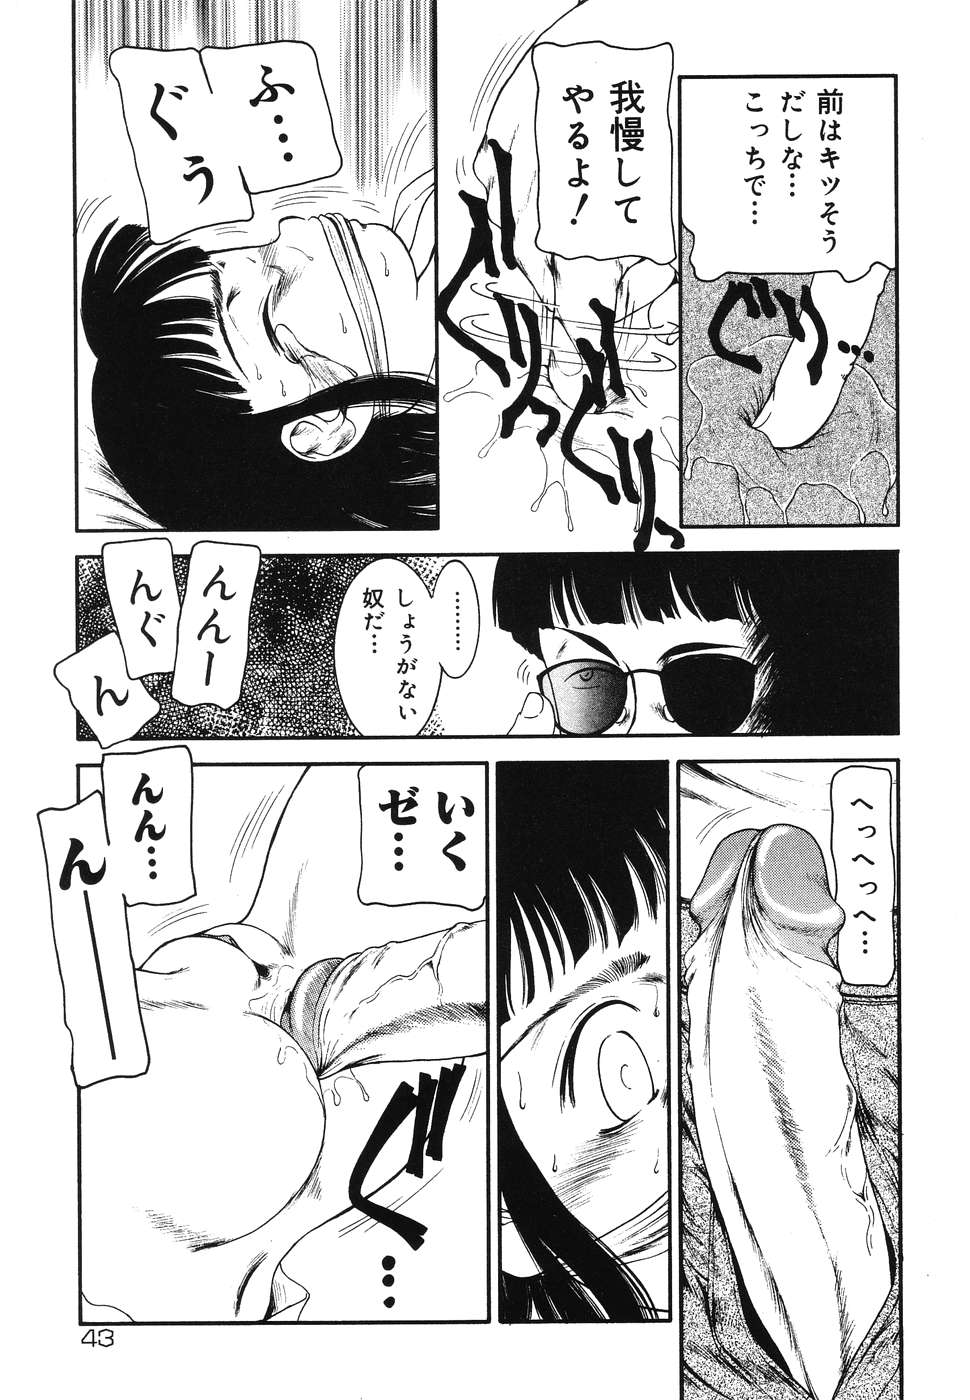 [Anthology] Warabe Warabe Bishoujo Ryoujoku page 43 full